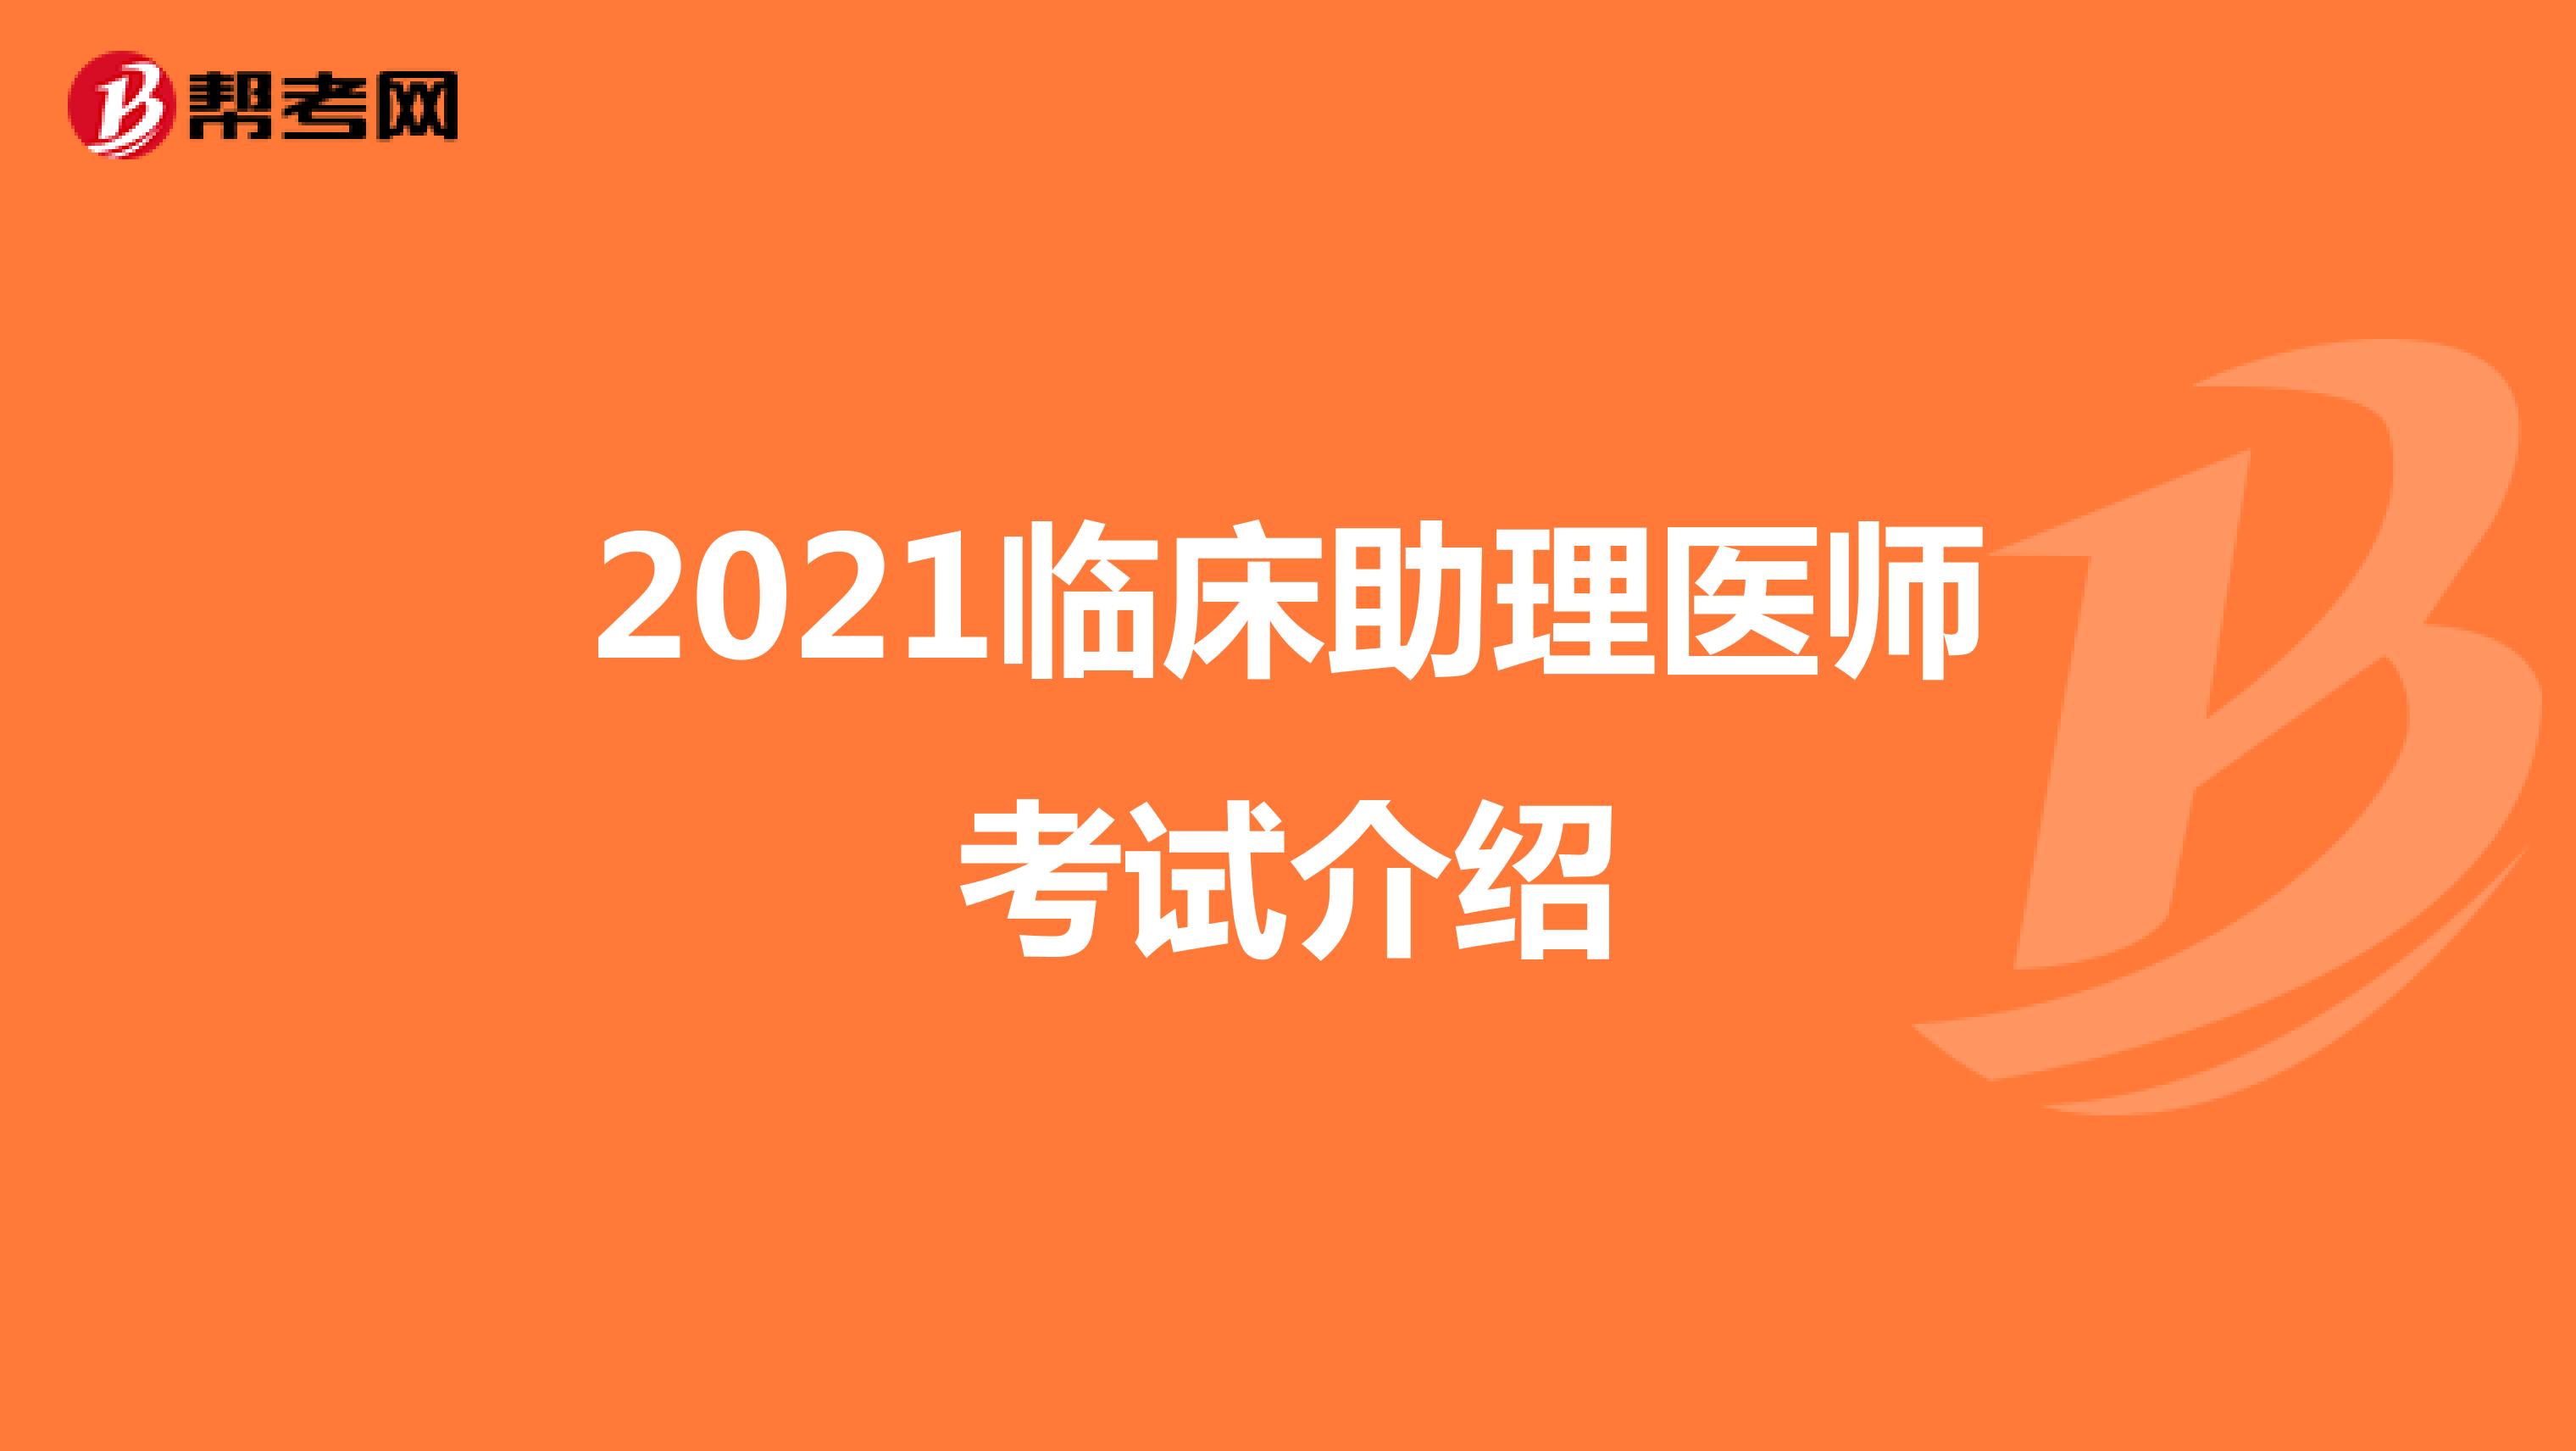 2021临床助理医师考试介绍